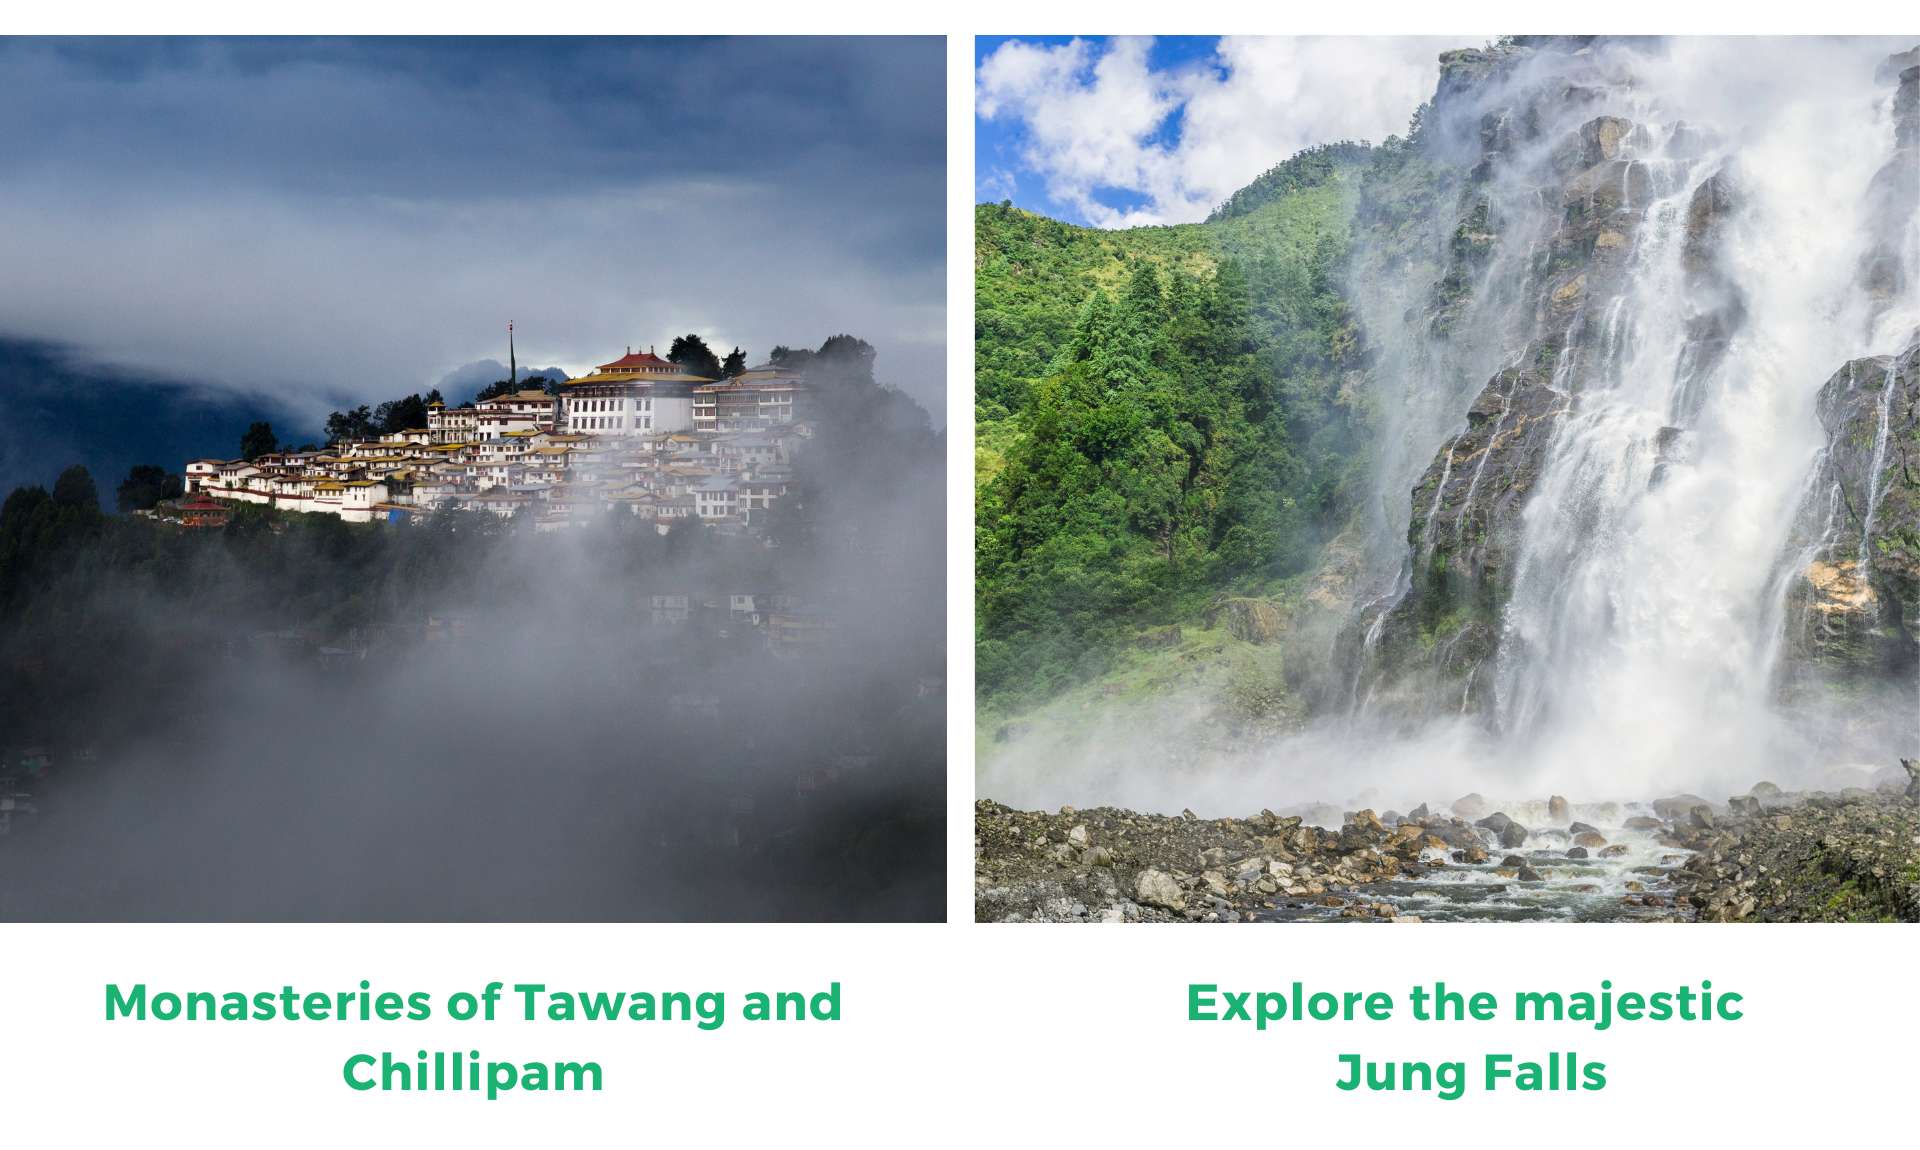 Explore the majestic Jung Falls